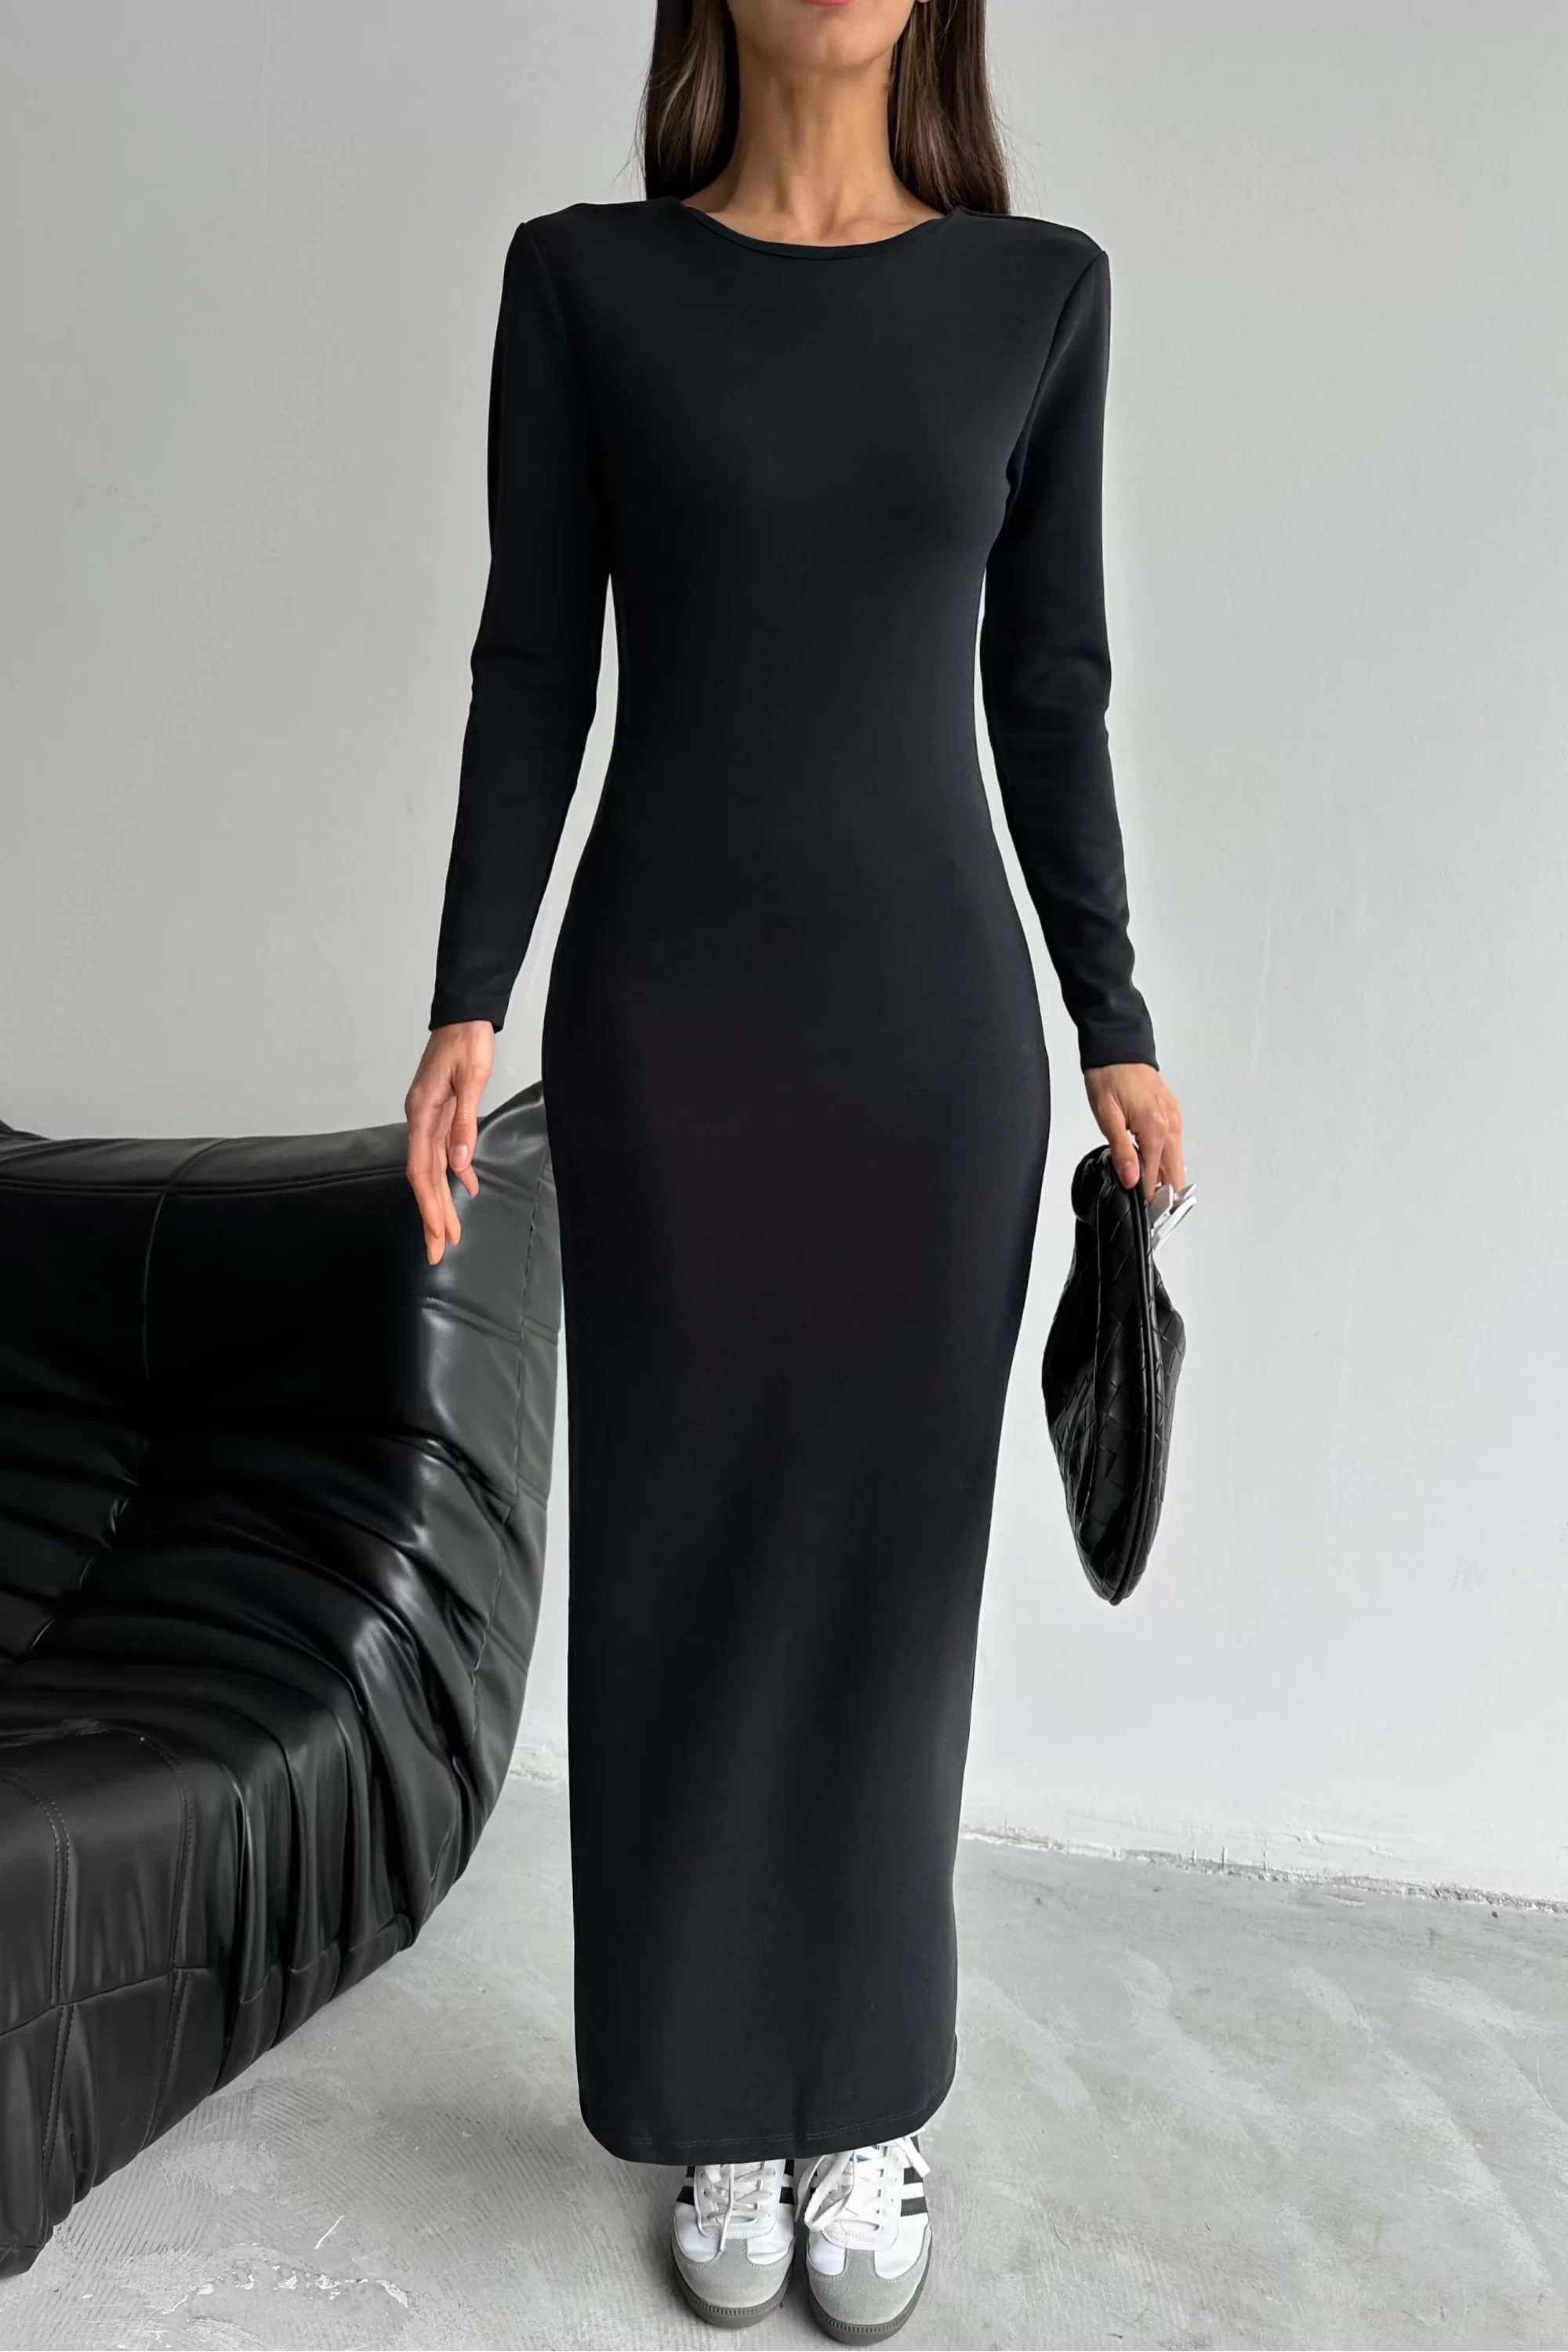 Kadın Siyah Uzun Elbise 1017-0004